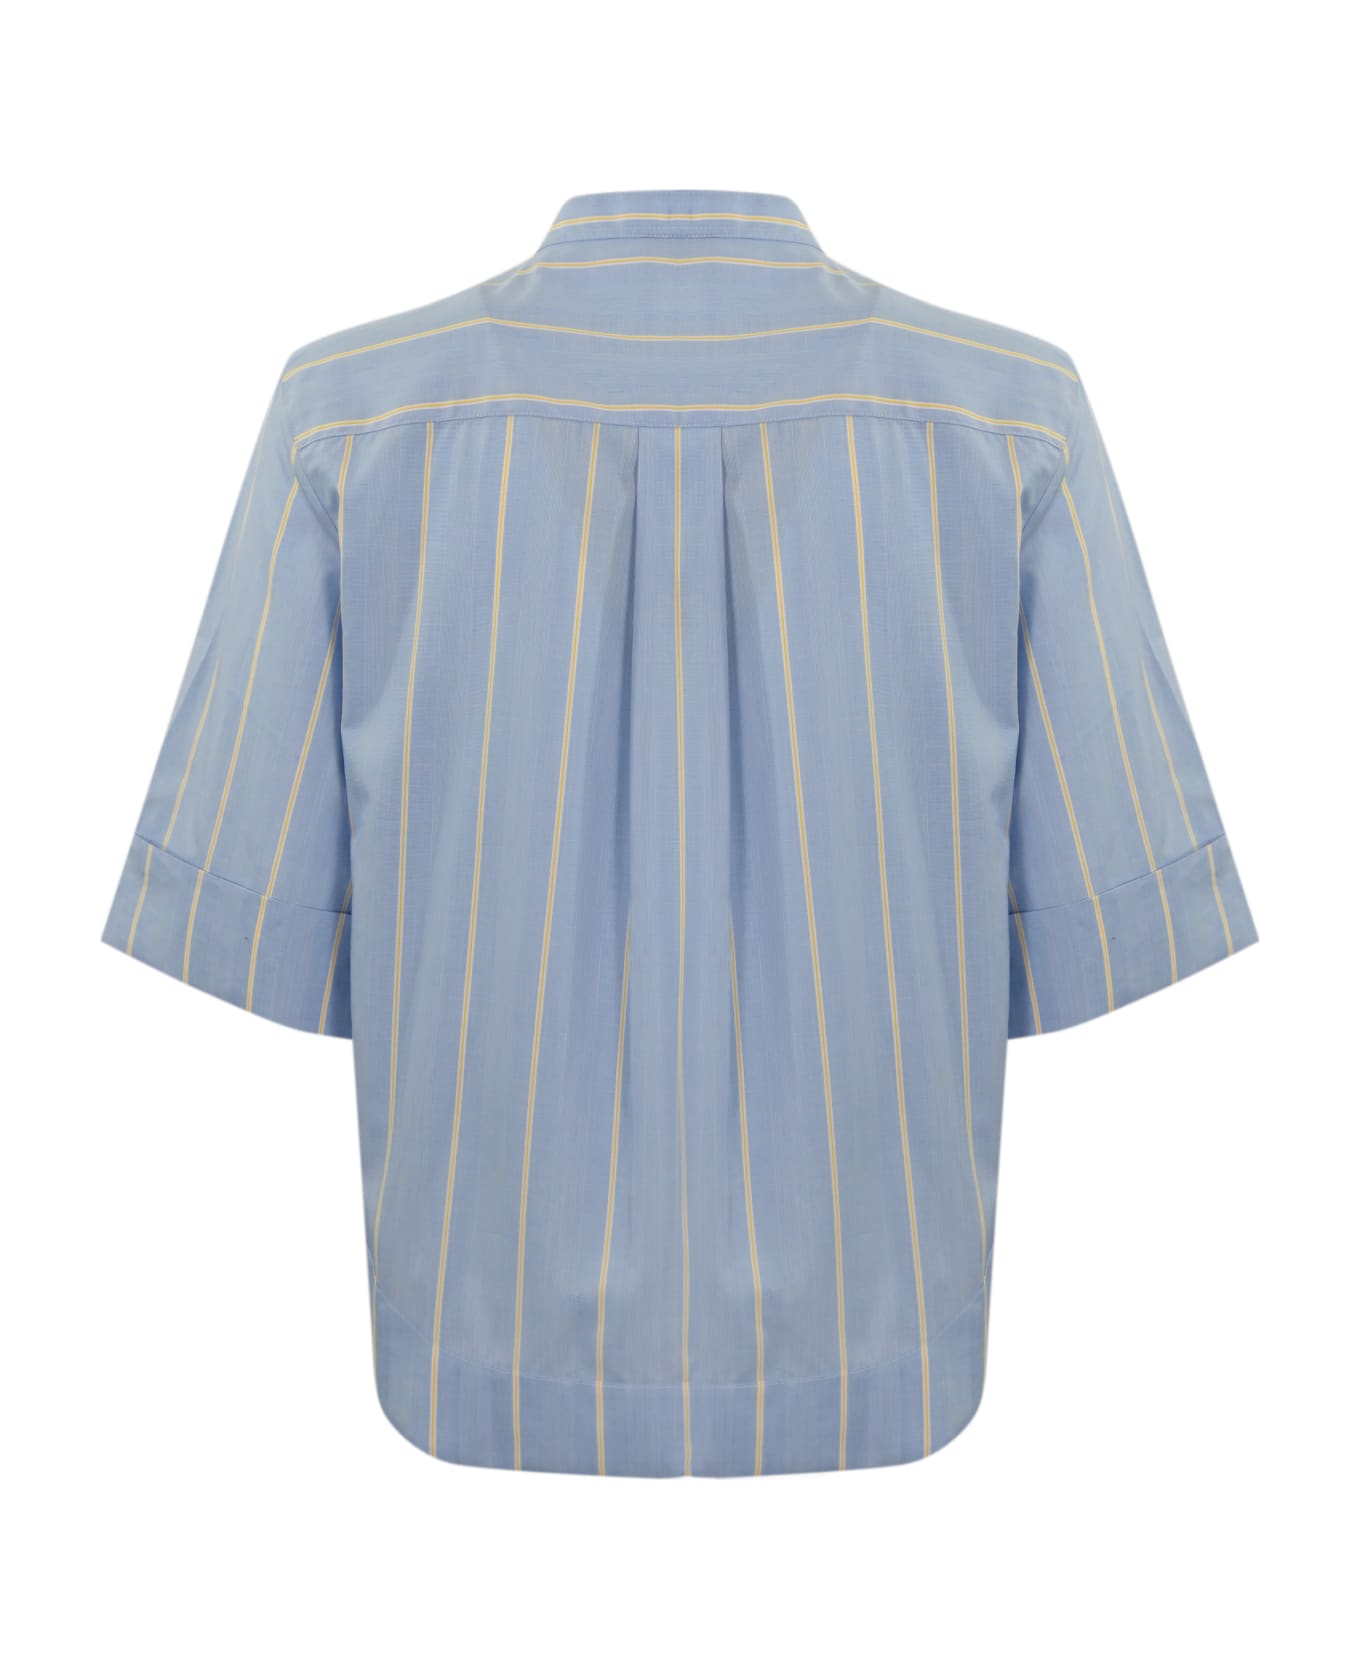 Fay Poepelin Shirt With Mandarin Collar - (azzurro)+(miele) シャツ